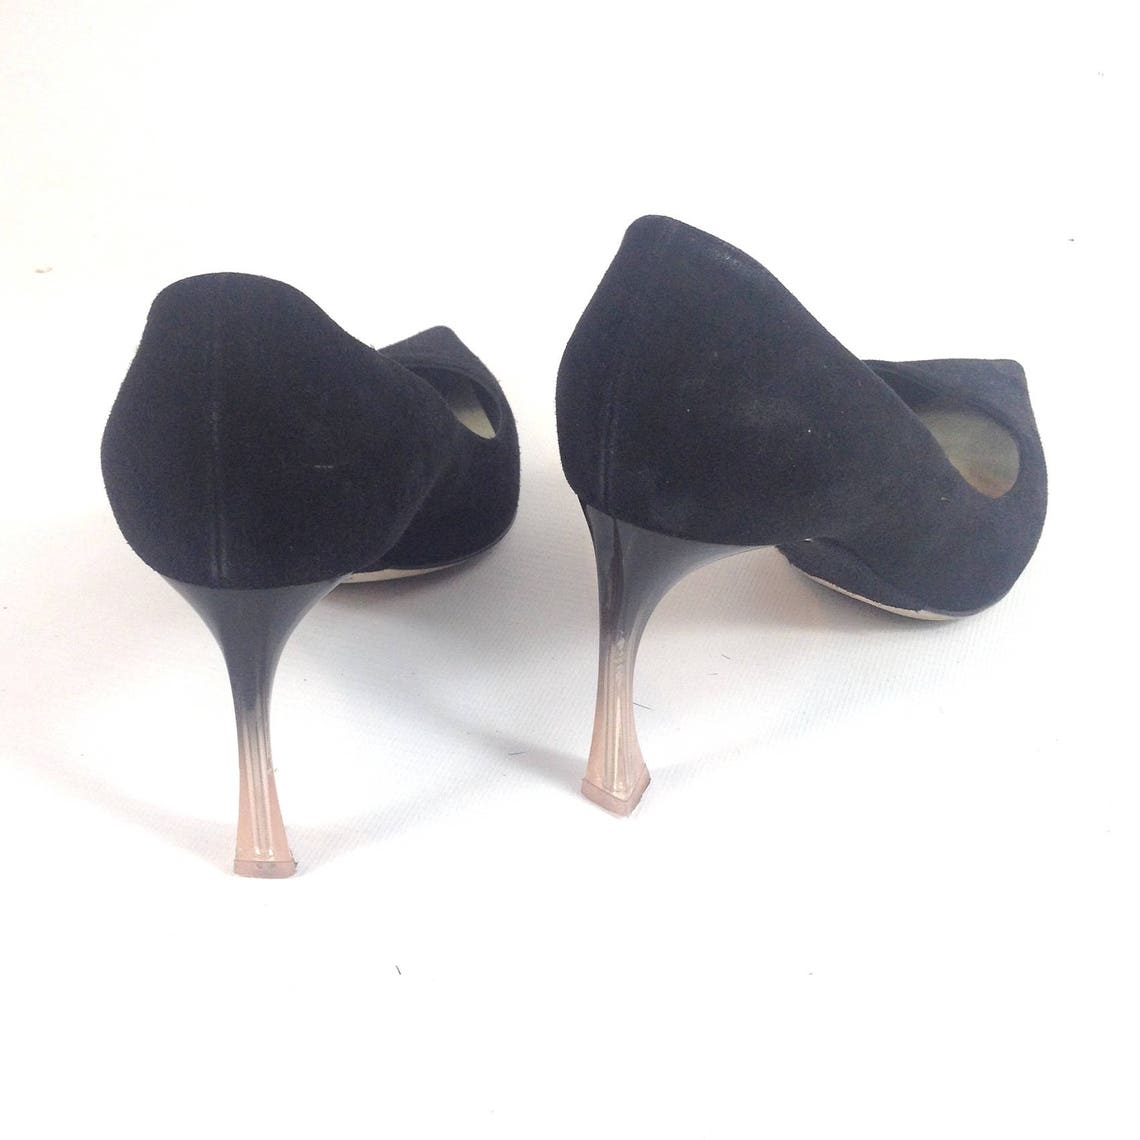 CHRISTIAN DIOR designer black suede leather SHOES high heels | Etsy